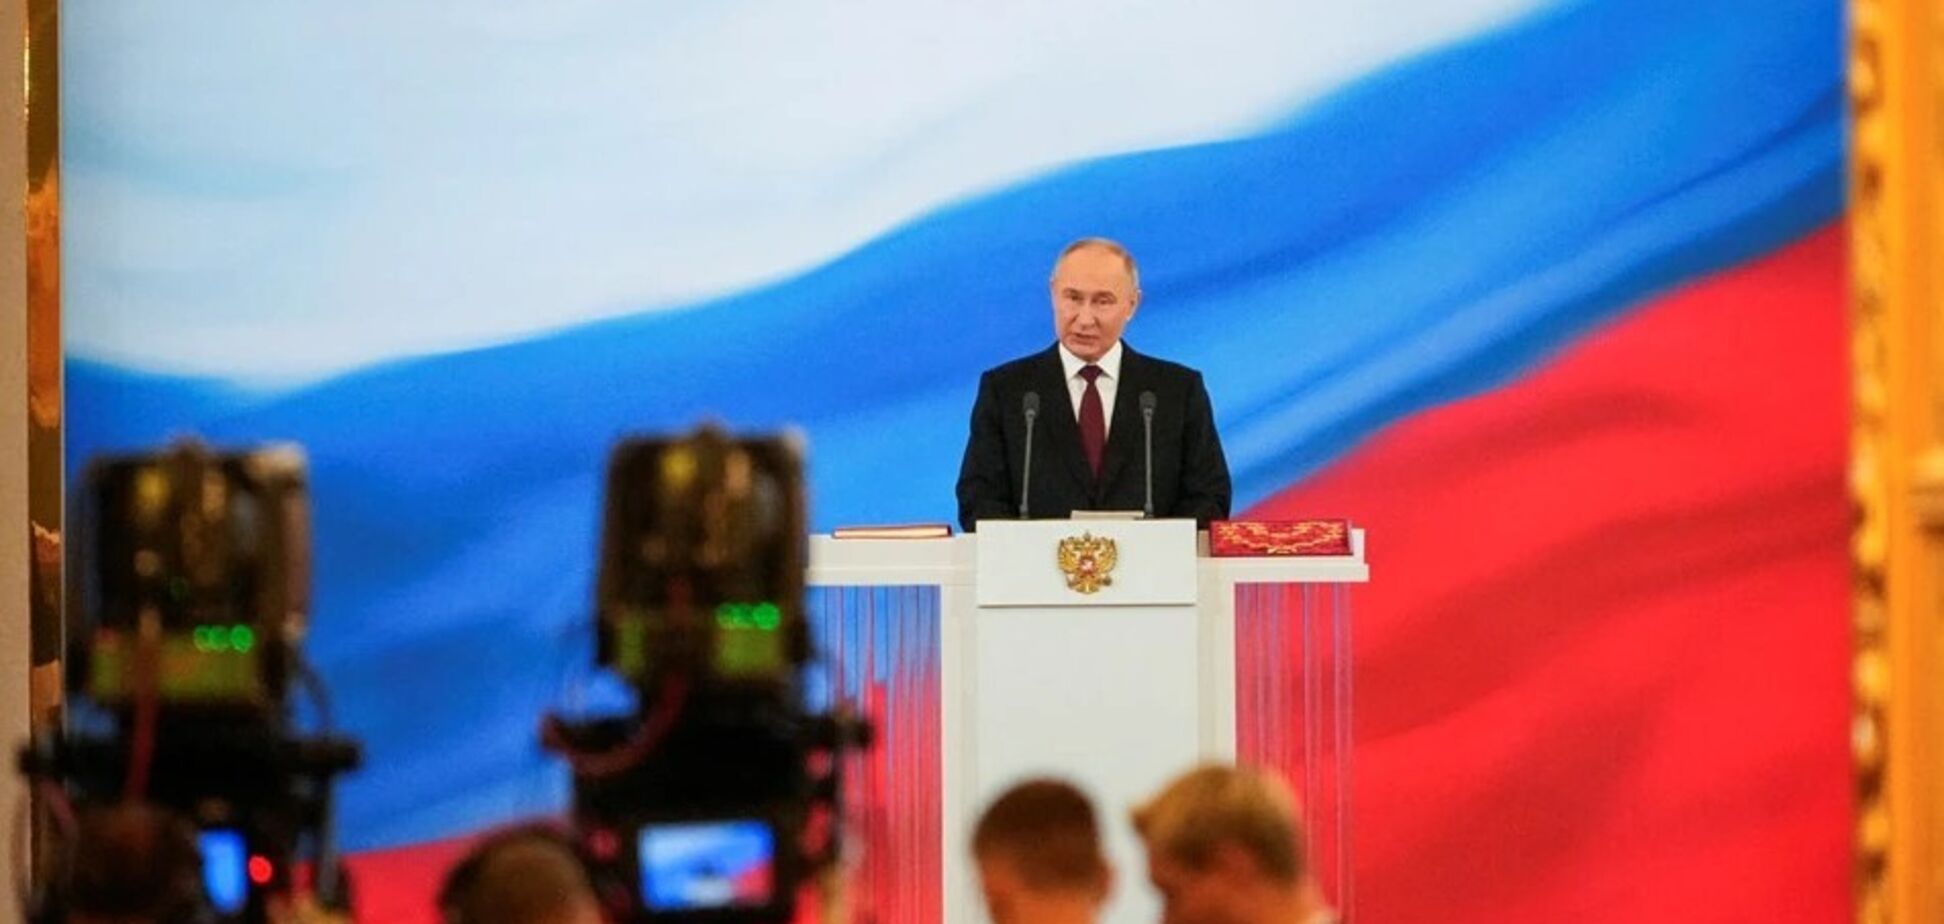 'Це нормальна практика': аналітик Краєв пояснив, чому представники країн ЄС поїхали на інавгурацію Путіна